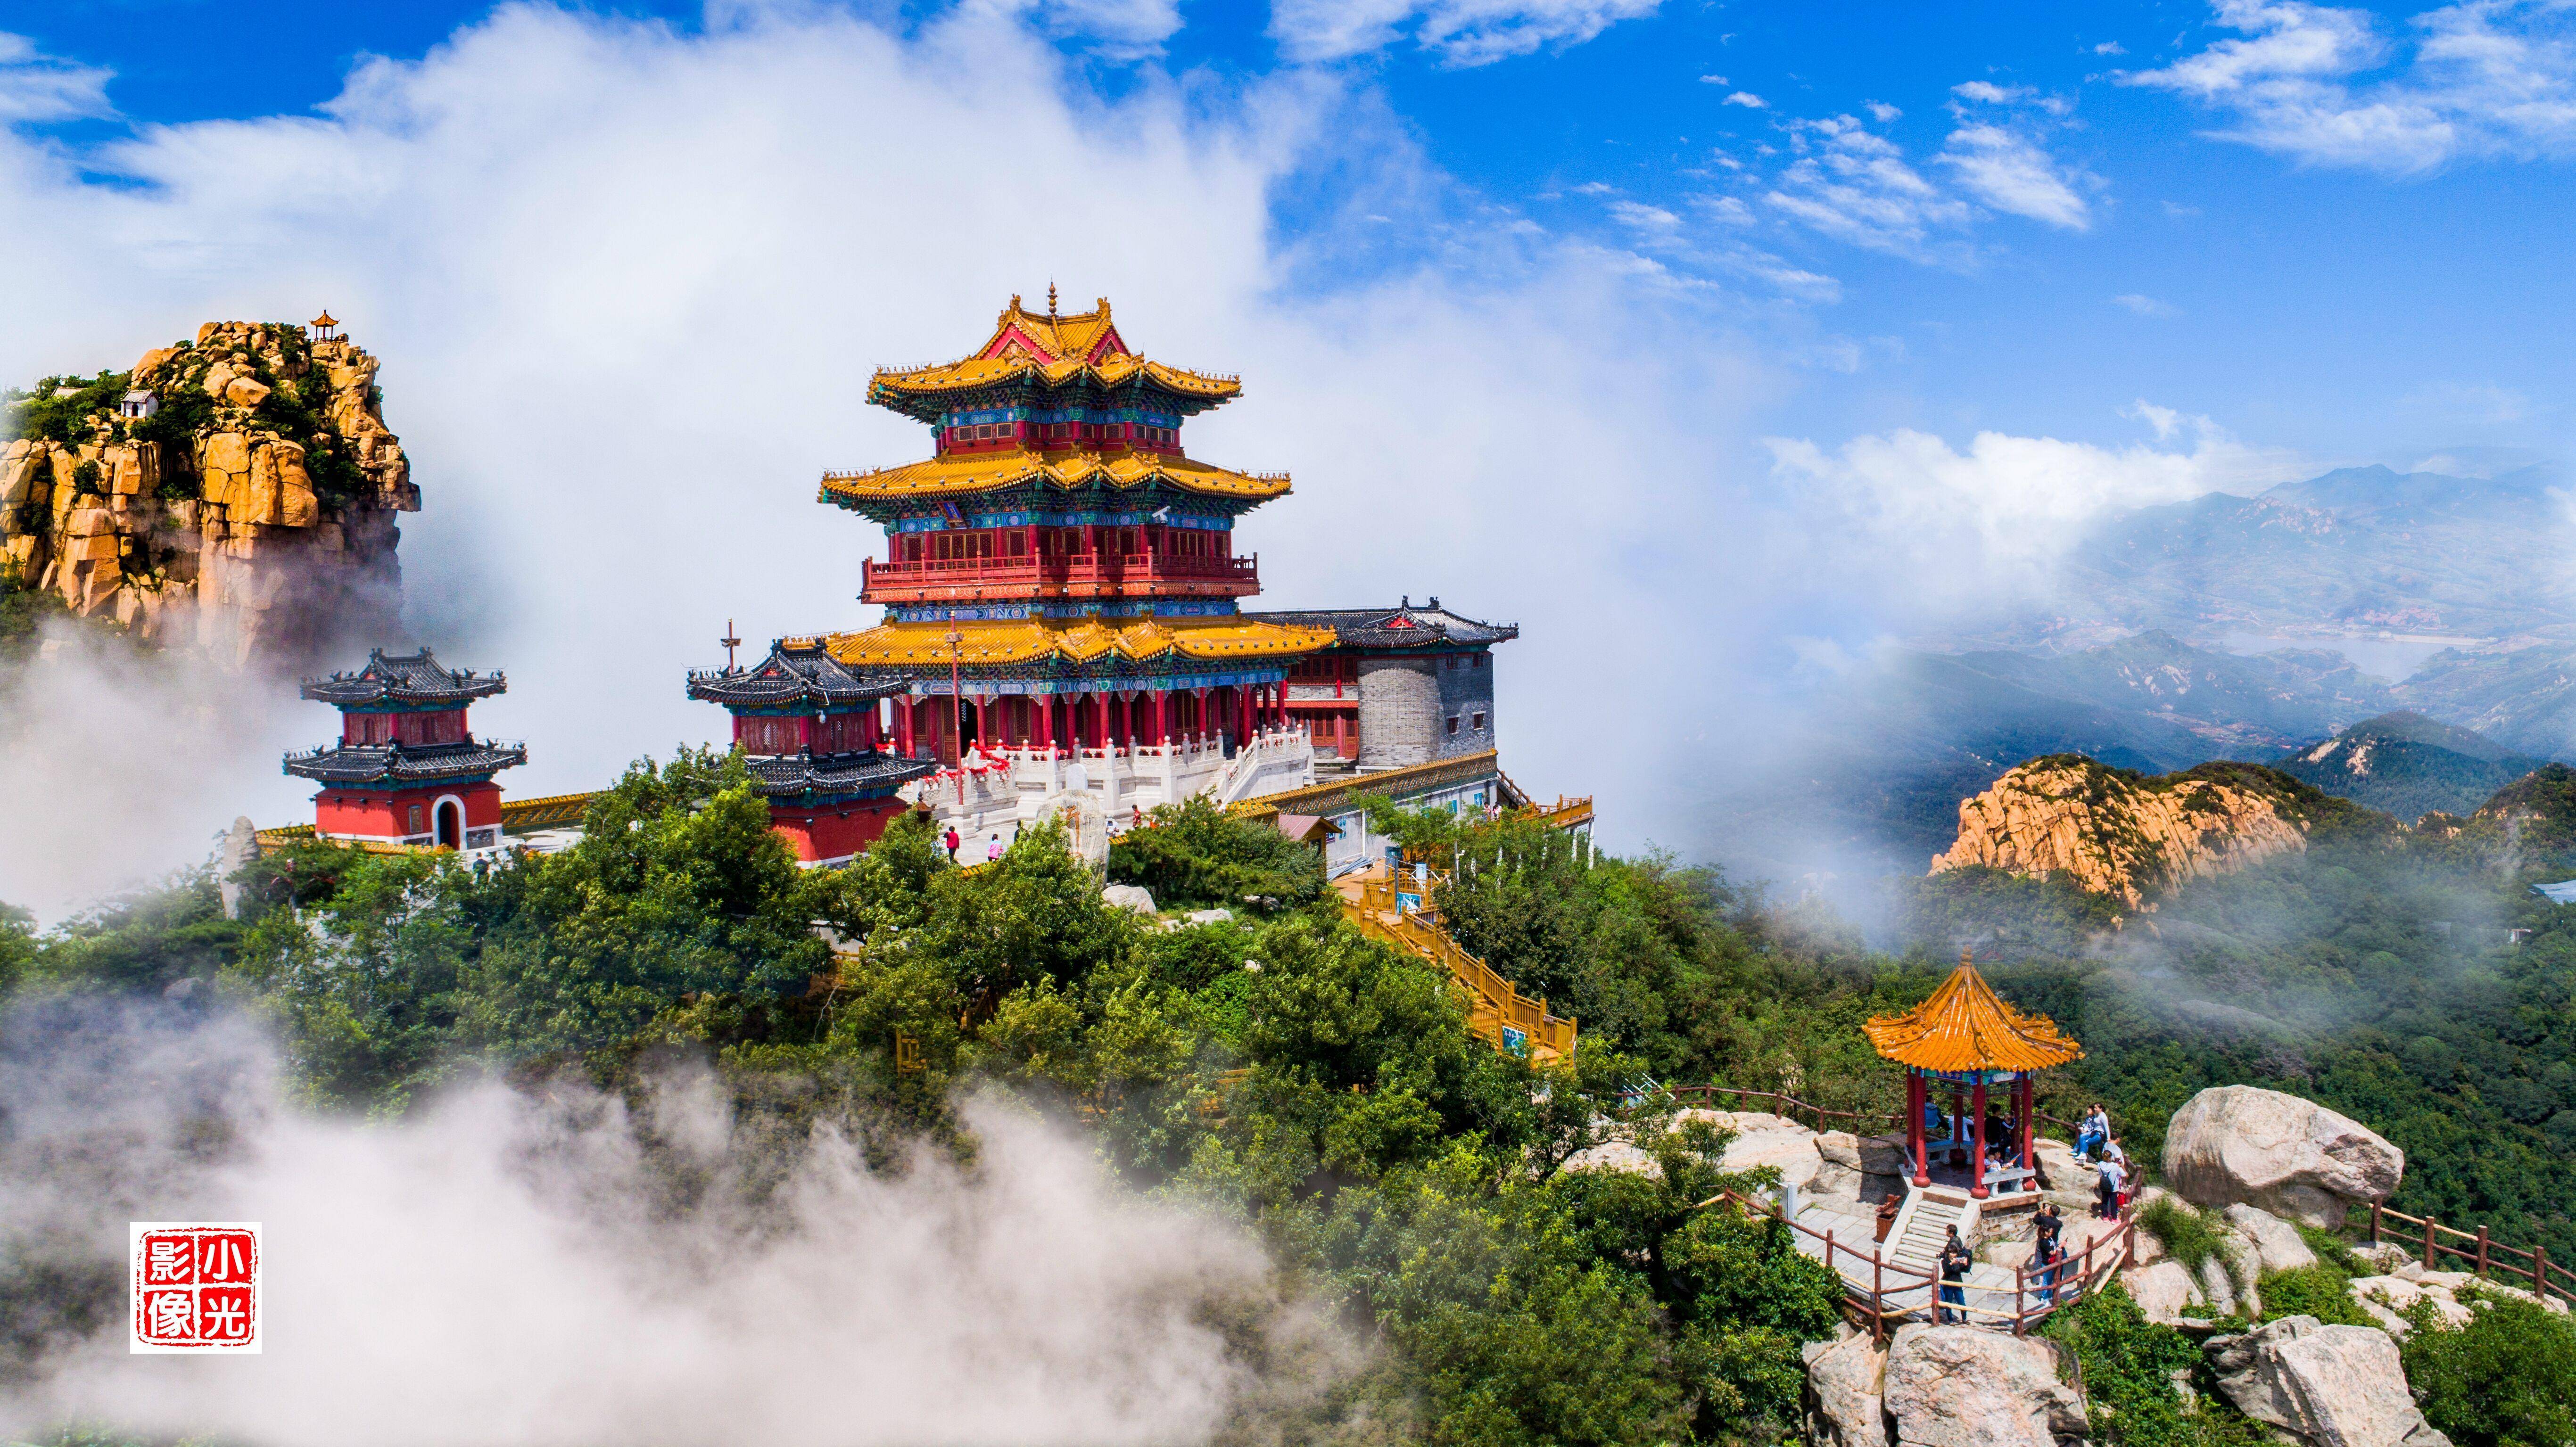 沂蒙山沂山风景区位于潍坊市临朐县,古称"海岱,有"东泰山"之称,是